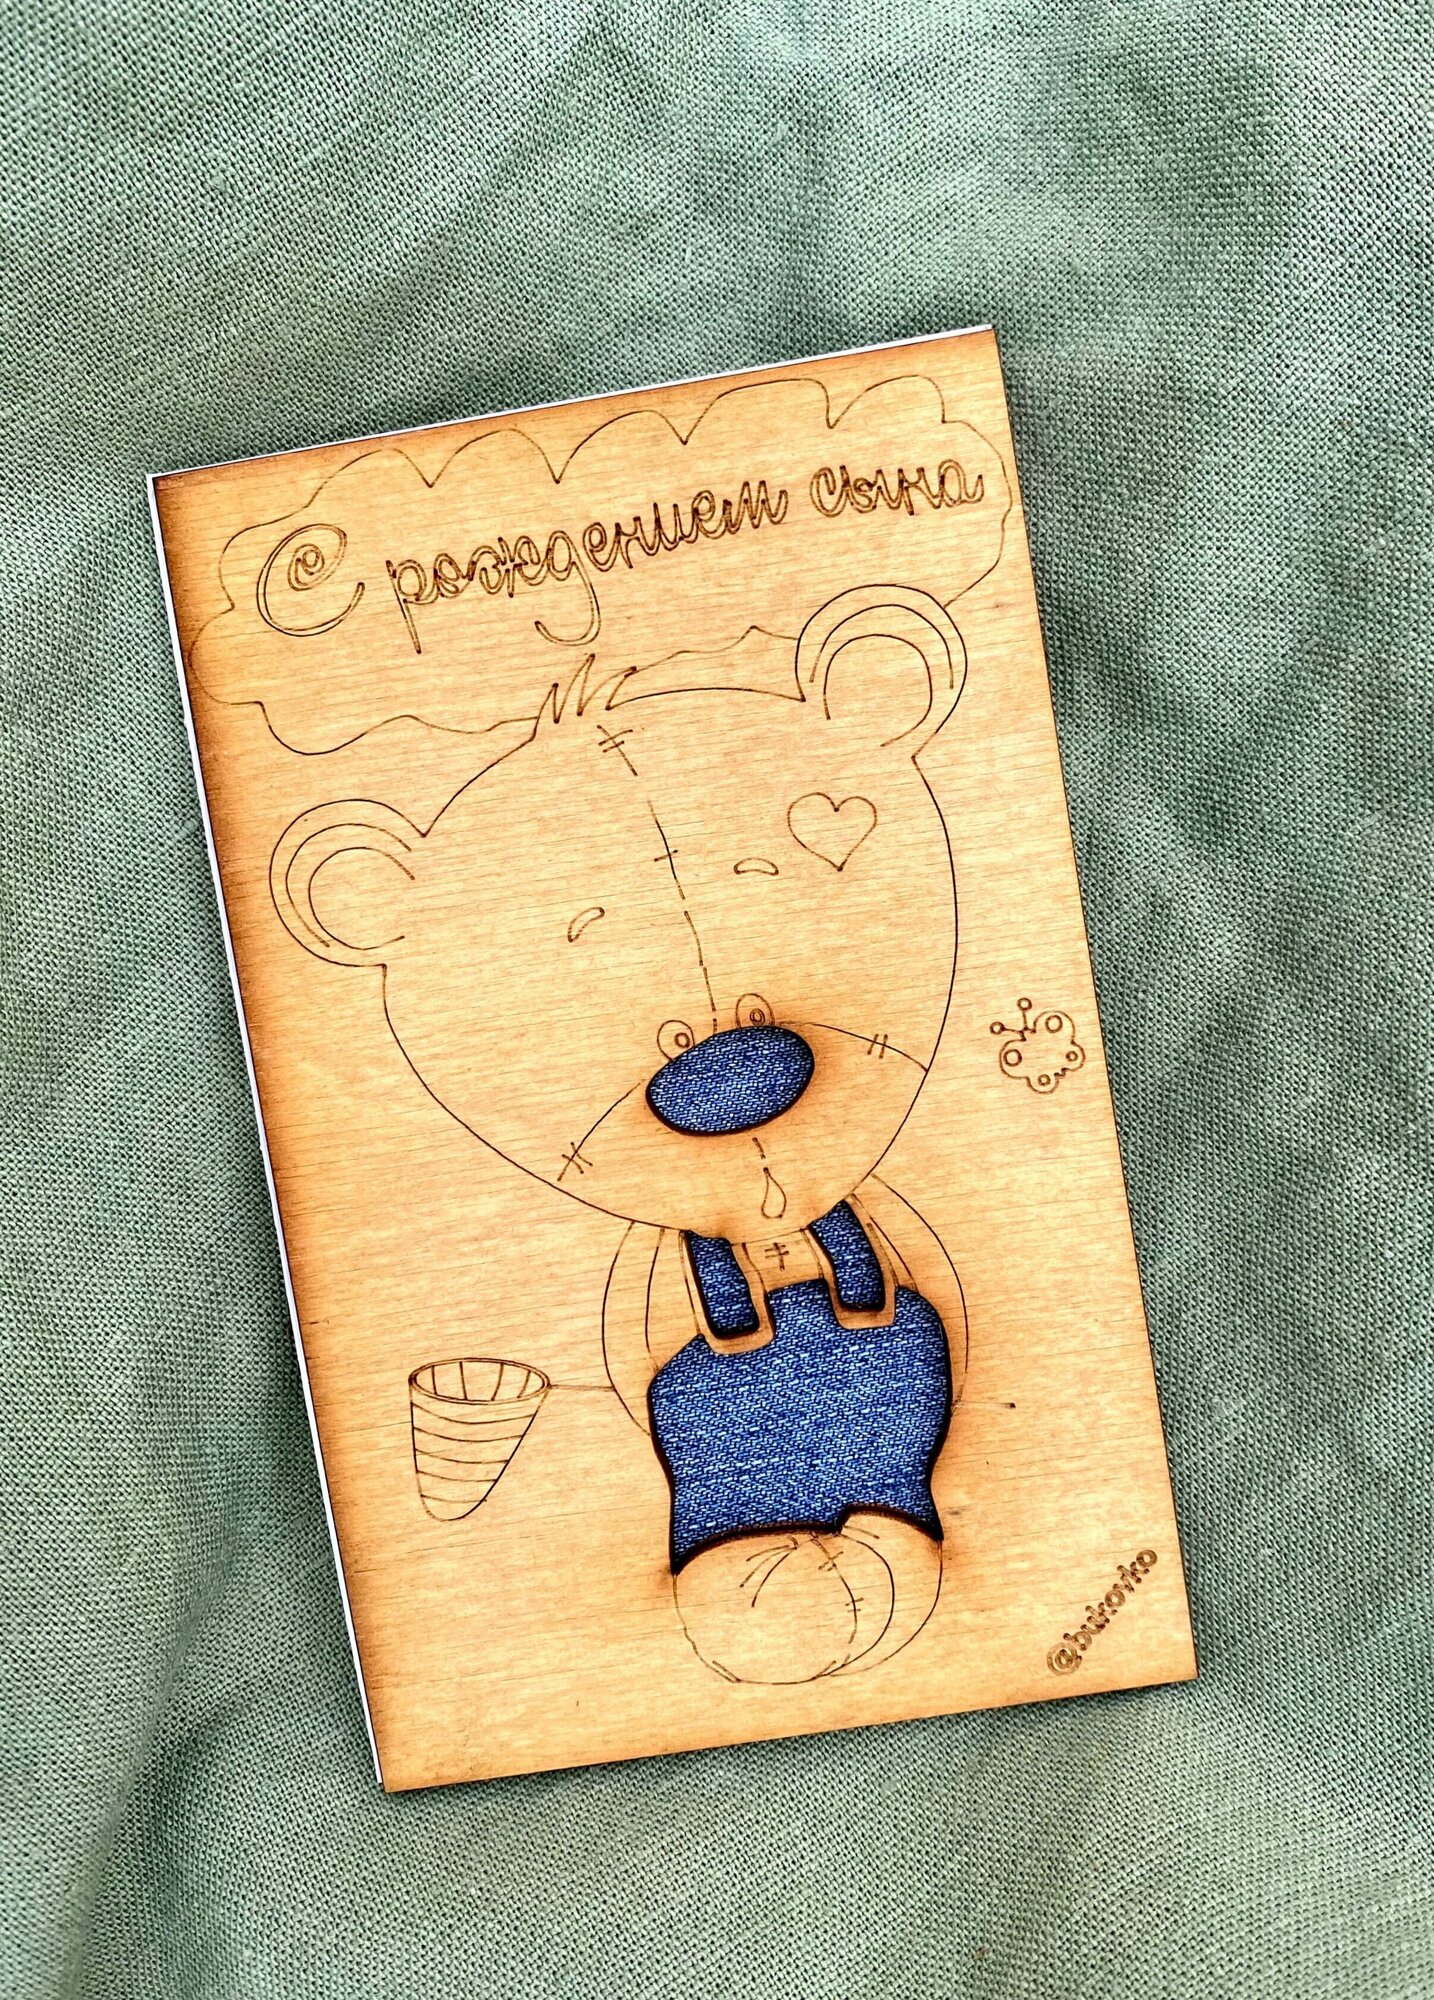 Открытка из дерева "С рождением сына" Bukovko / деревянная открытка на рождение ребенка, сыну, внуку, новорожденному ребенку на выписку, крещение